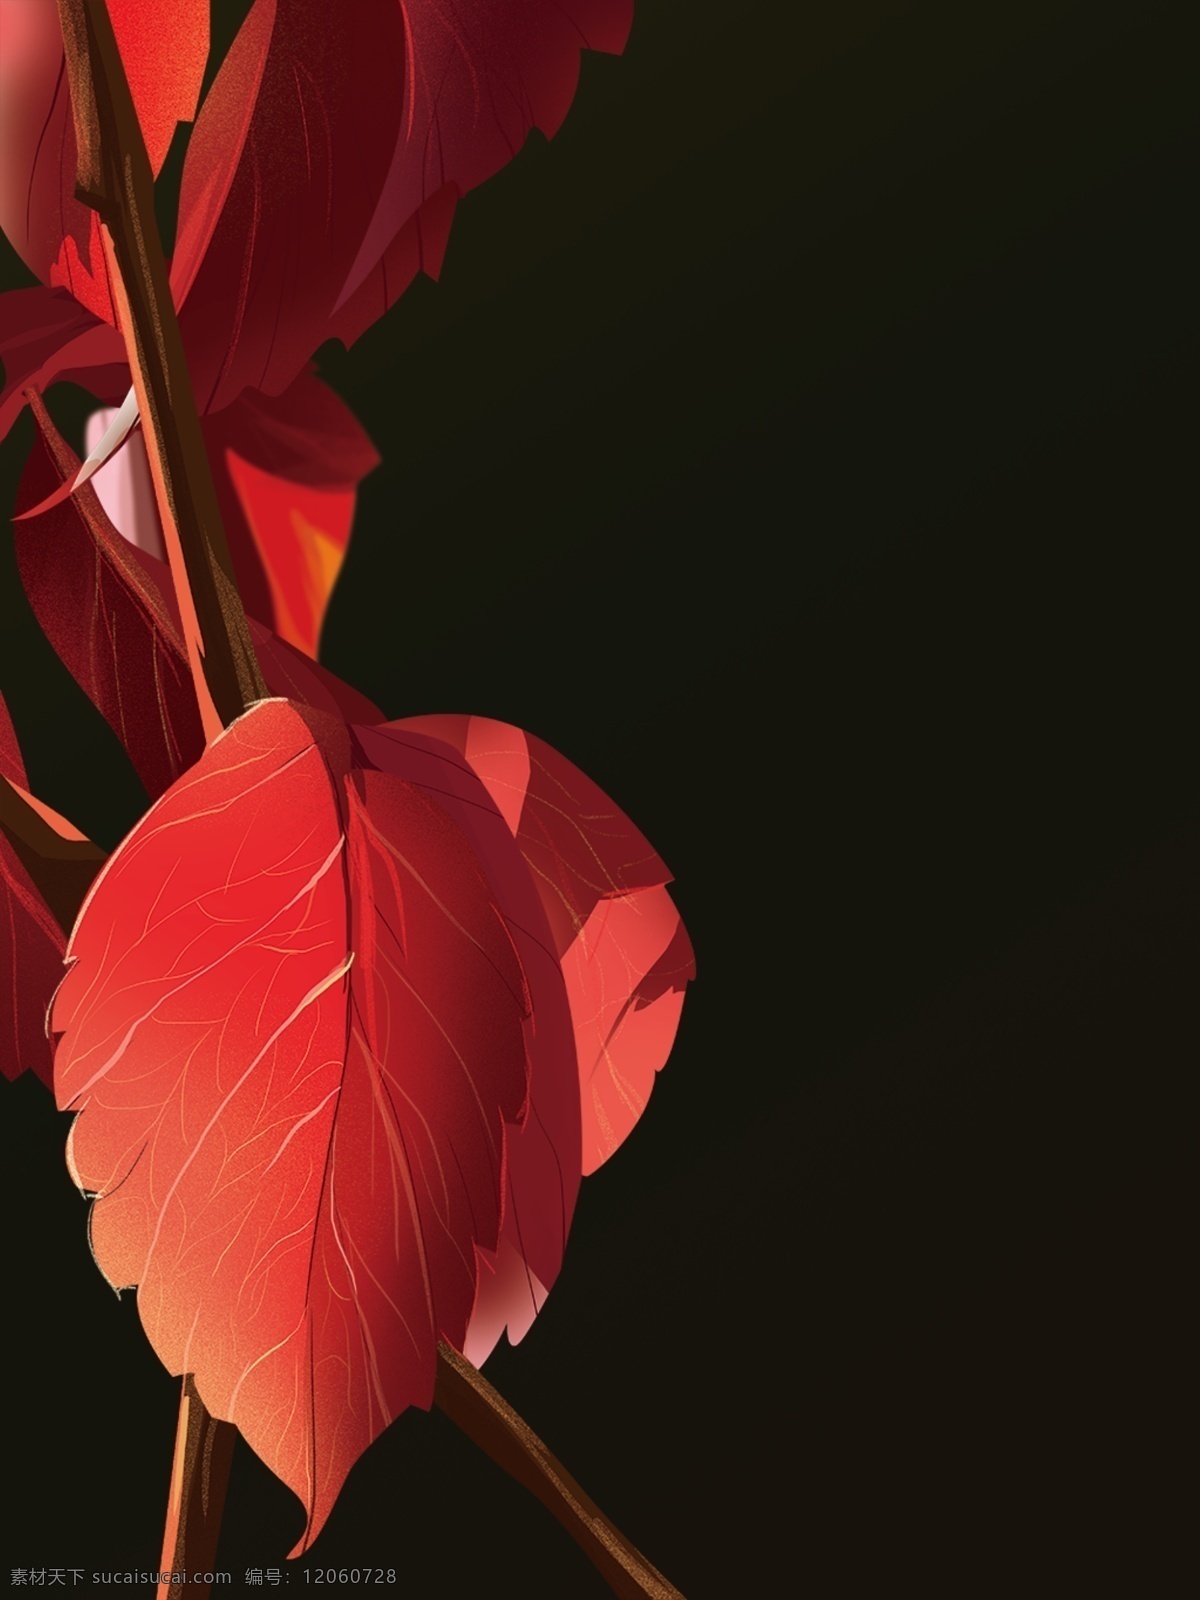 秋分 唯美 手绘 叶子 插画 背景 手绘叶子 广告背景 背景素材 背景展板 彩色背景